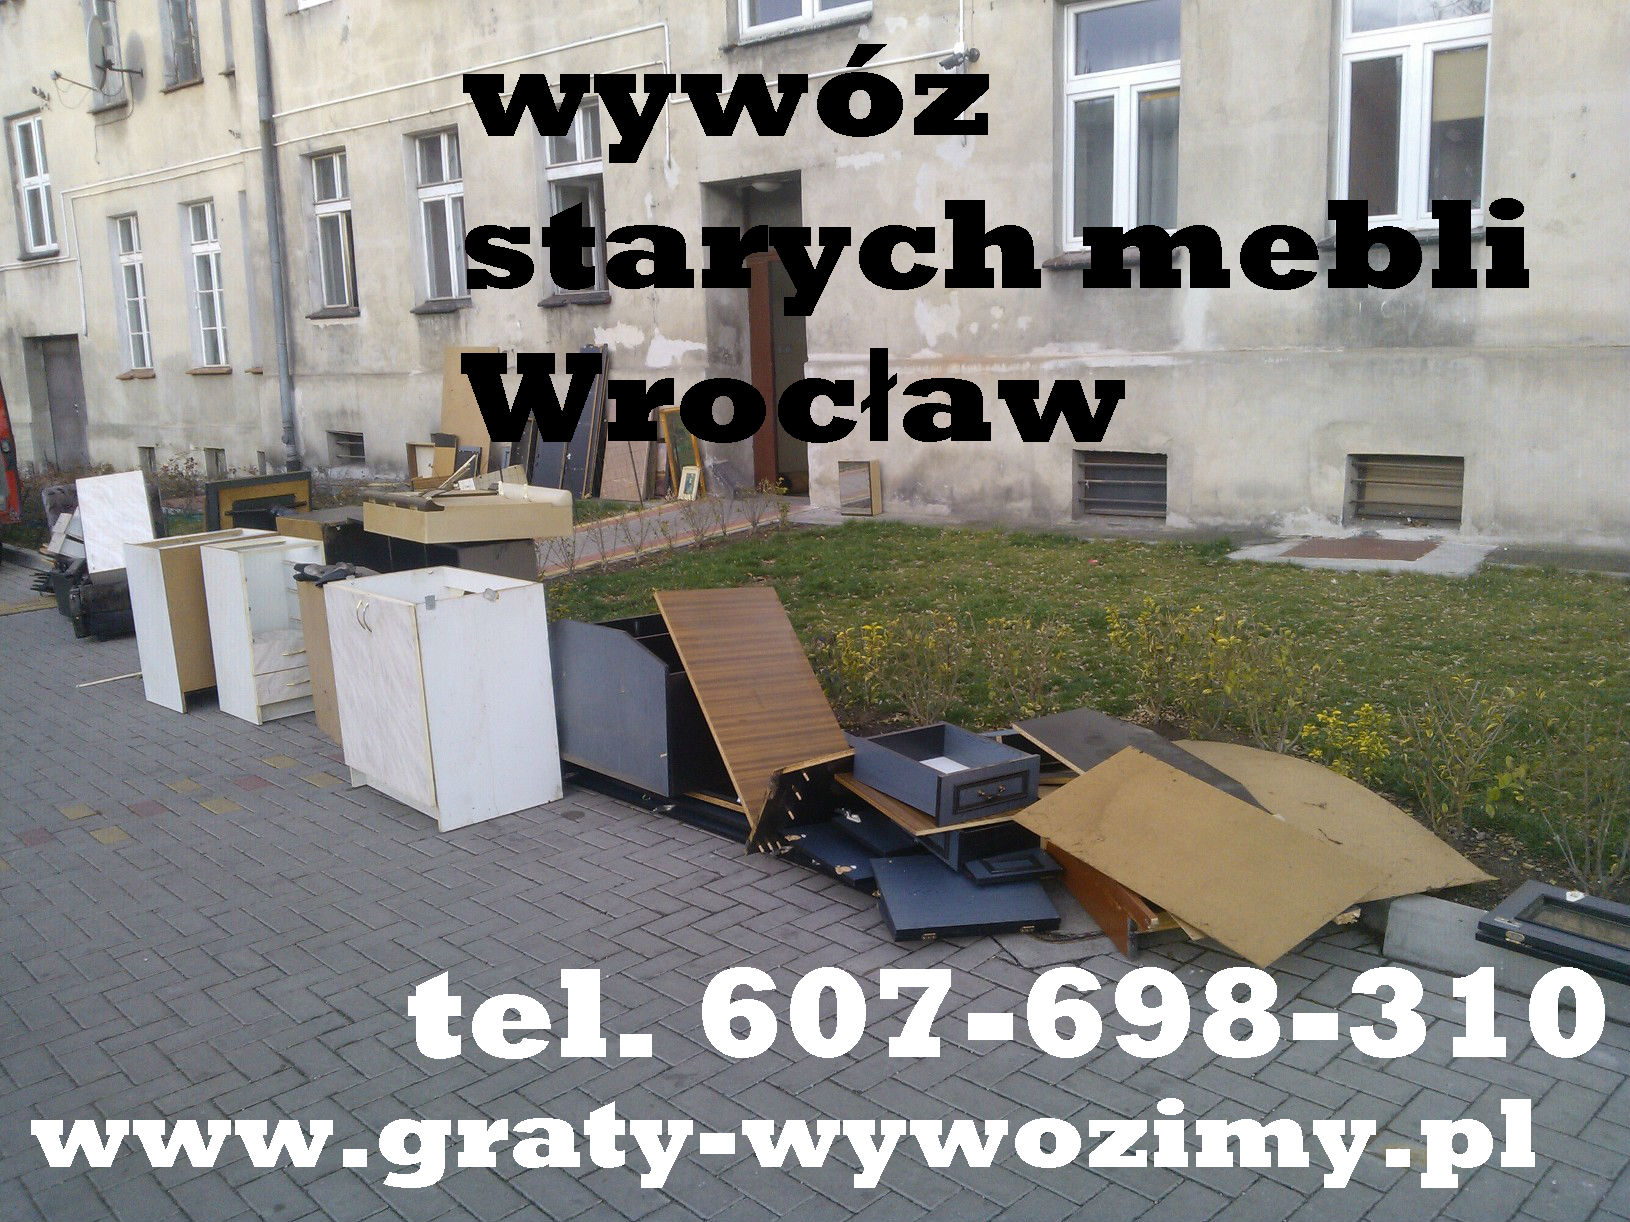 Demontaż/wywóz/utylizacja starych mebli Wrocław,opróżnianie mieszkań